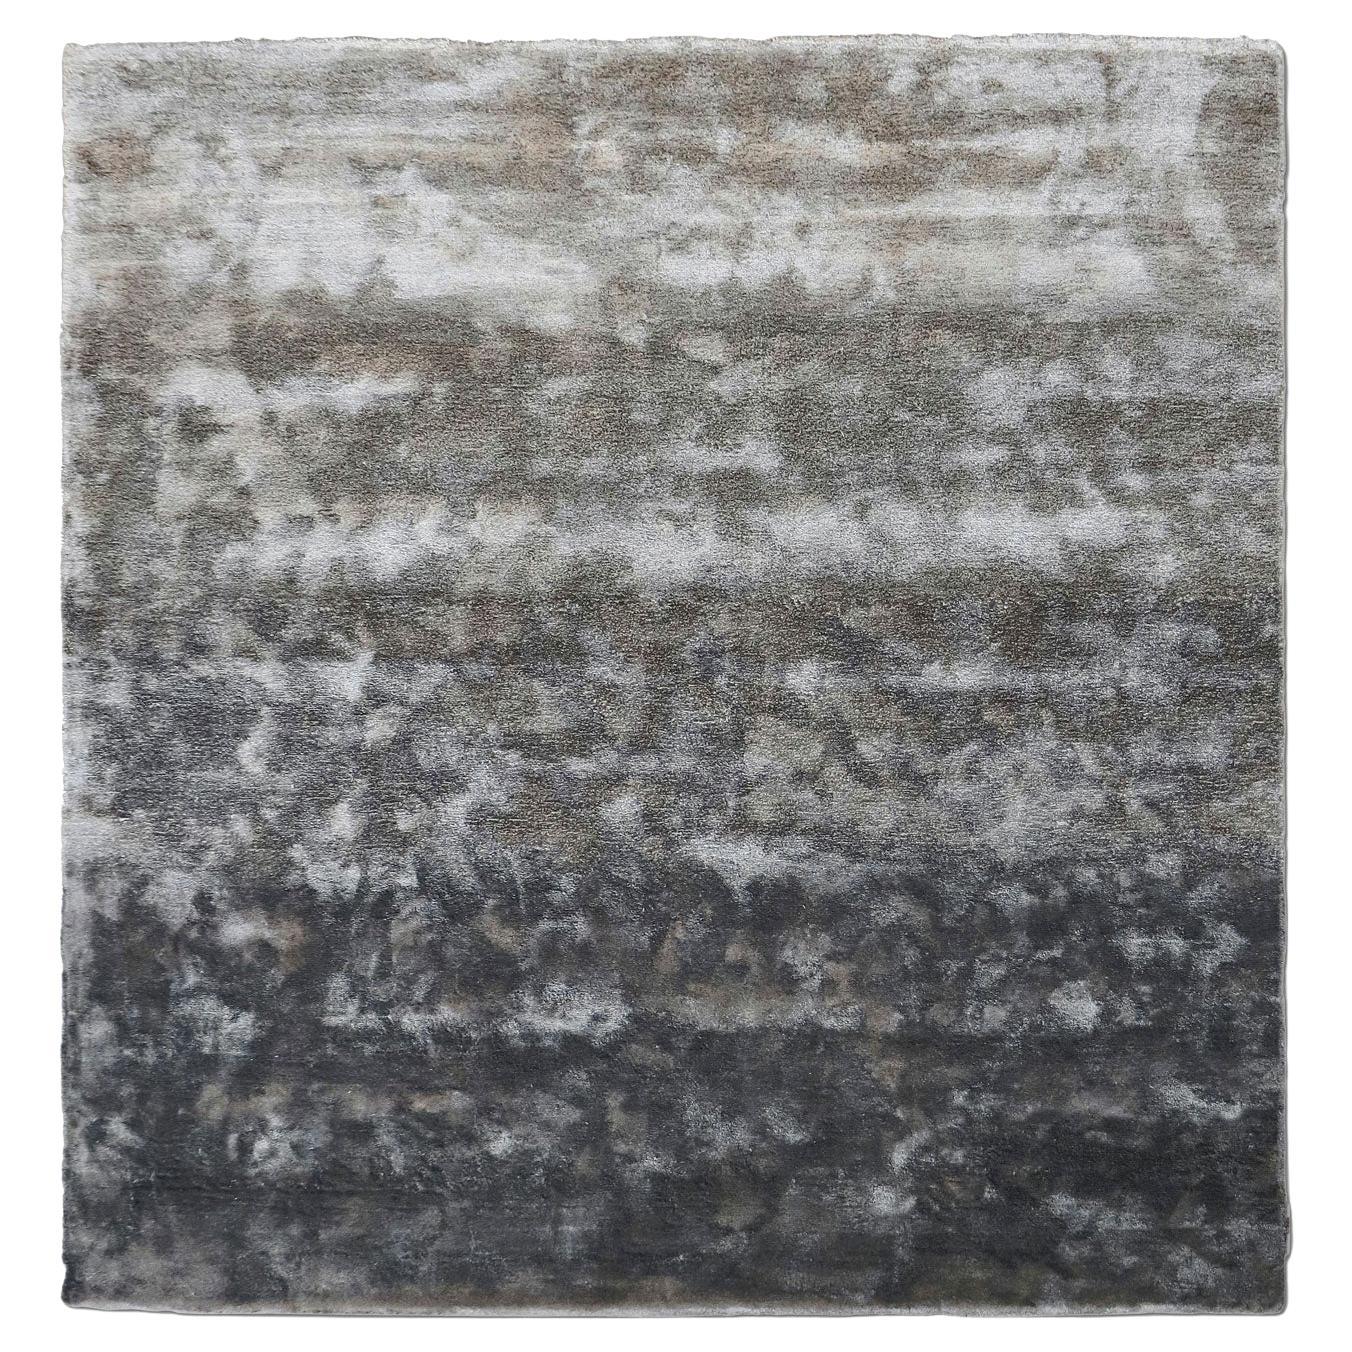 Eleganter Eco-Friendly Grauer Teppich des 21. Jahrhunderts von Deanna Comellini 250x260 cm